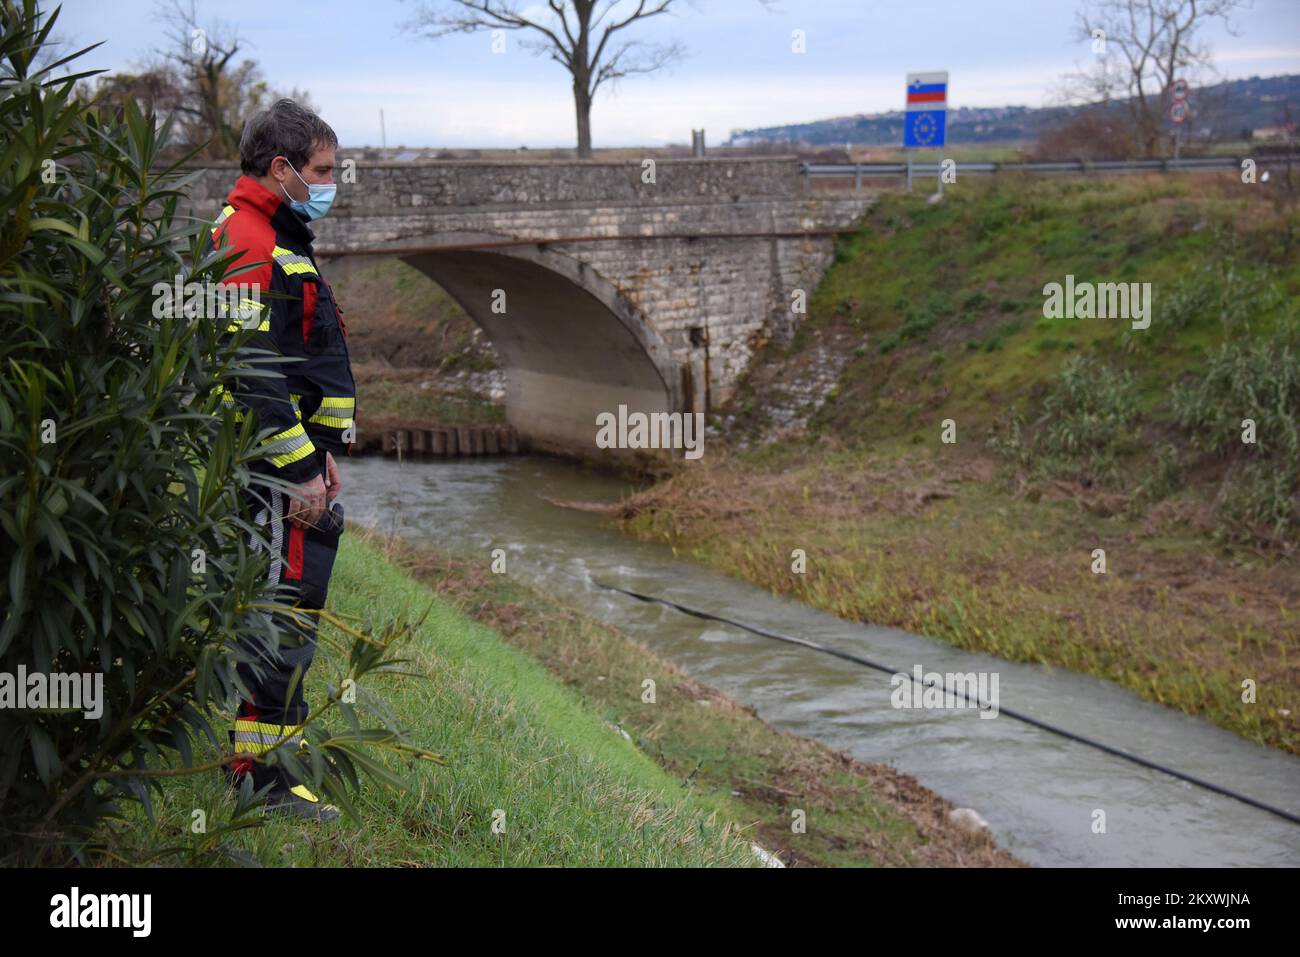 Une recherche est toujours en cours pour une jeune fille de 10 ans qui a disparu jeudi soir dans la rivière Dragonja gonflée alors qu'un groupe de migrants tentait de traverser la frontière croate-slovène.la police a déclaré qu'une turque, la mère de la fille disparue, avait été sauvée de la rivière. Ils ont ajouté qu'un document qu'ils avaient trouvé indiquait que l'enfant était handicapé.environ 40 policiers et plongeurs croates ont été rejoints par des plongeurs slovènes à la recherche de la fille disparue.le chef de police de la ville d'Istrie de Buje, Boban Robin Paulovic, a déclaré que les pompiers croates et slovènes Banque D'Images